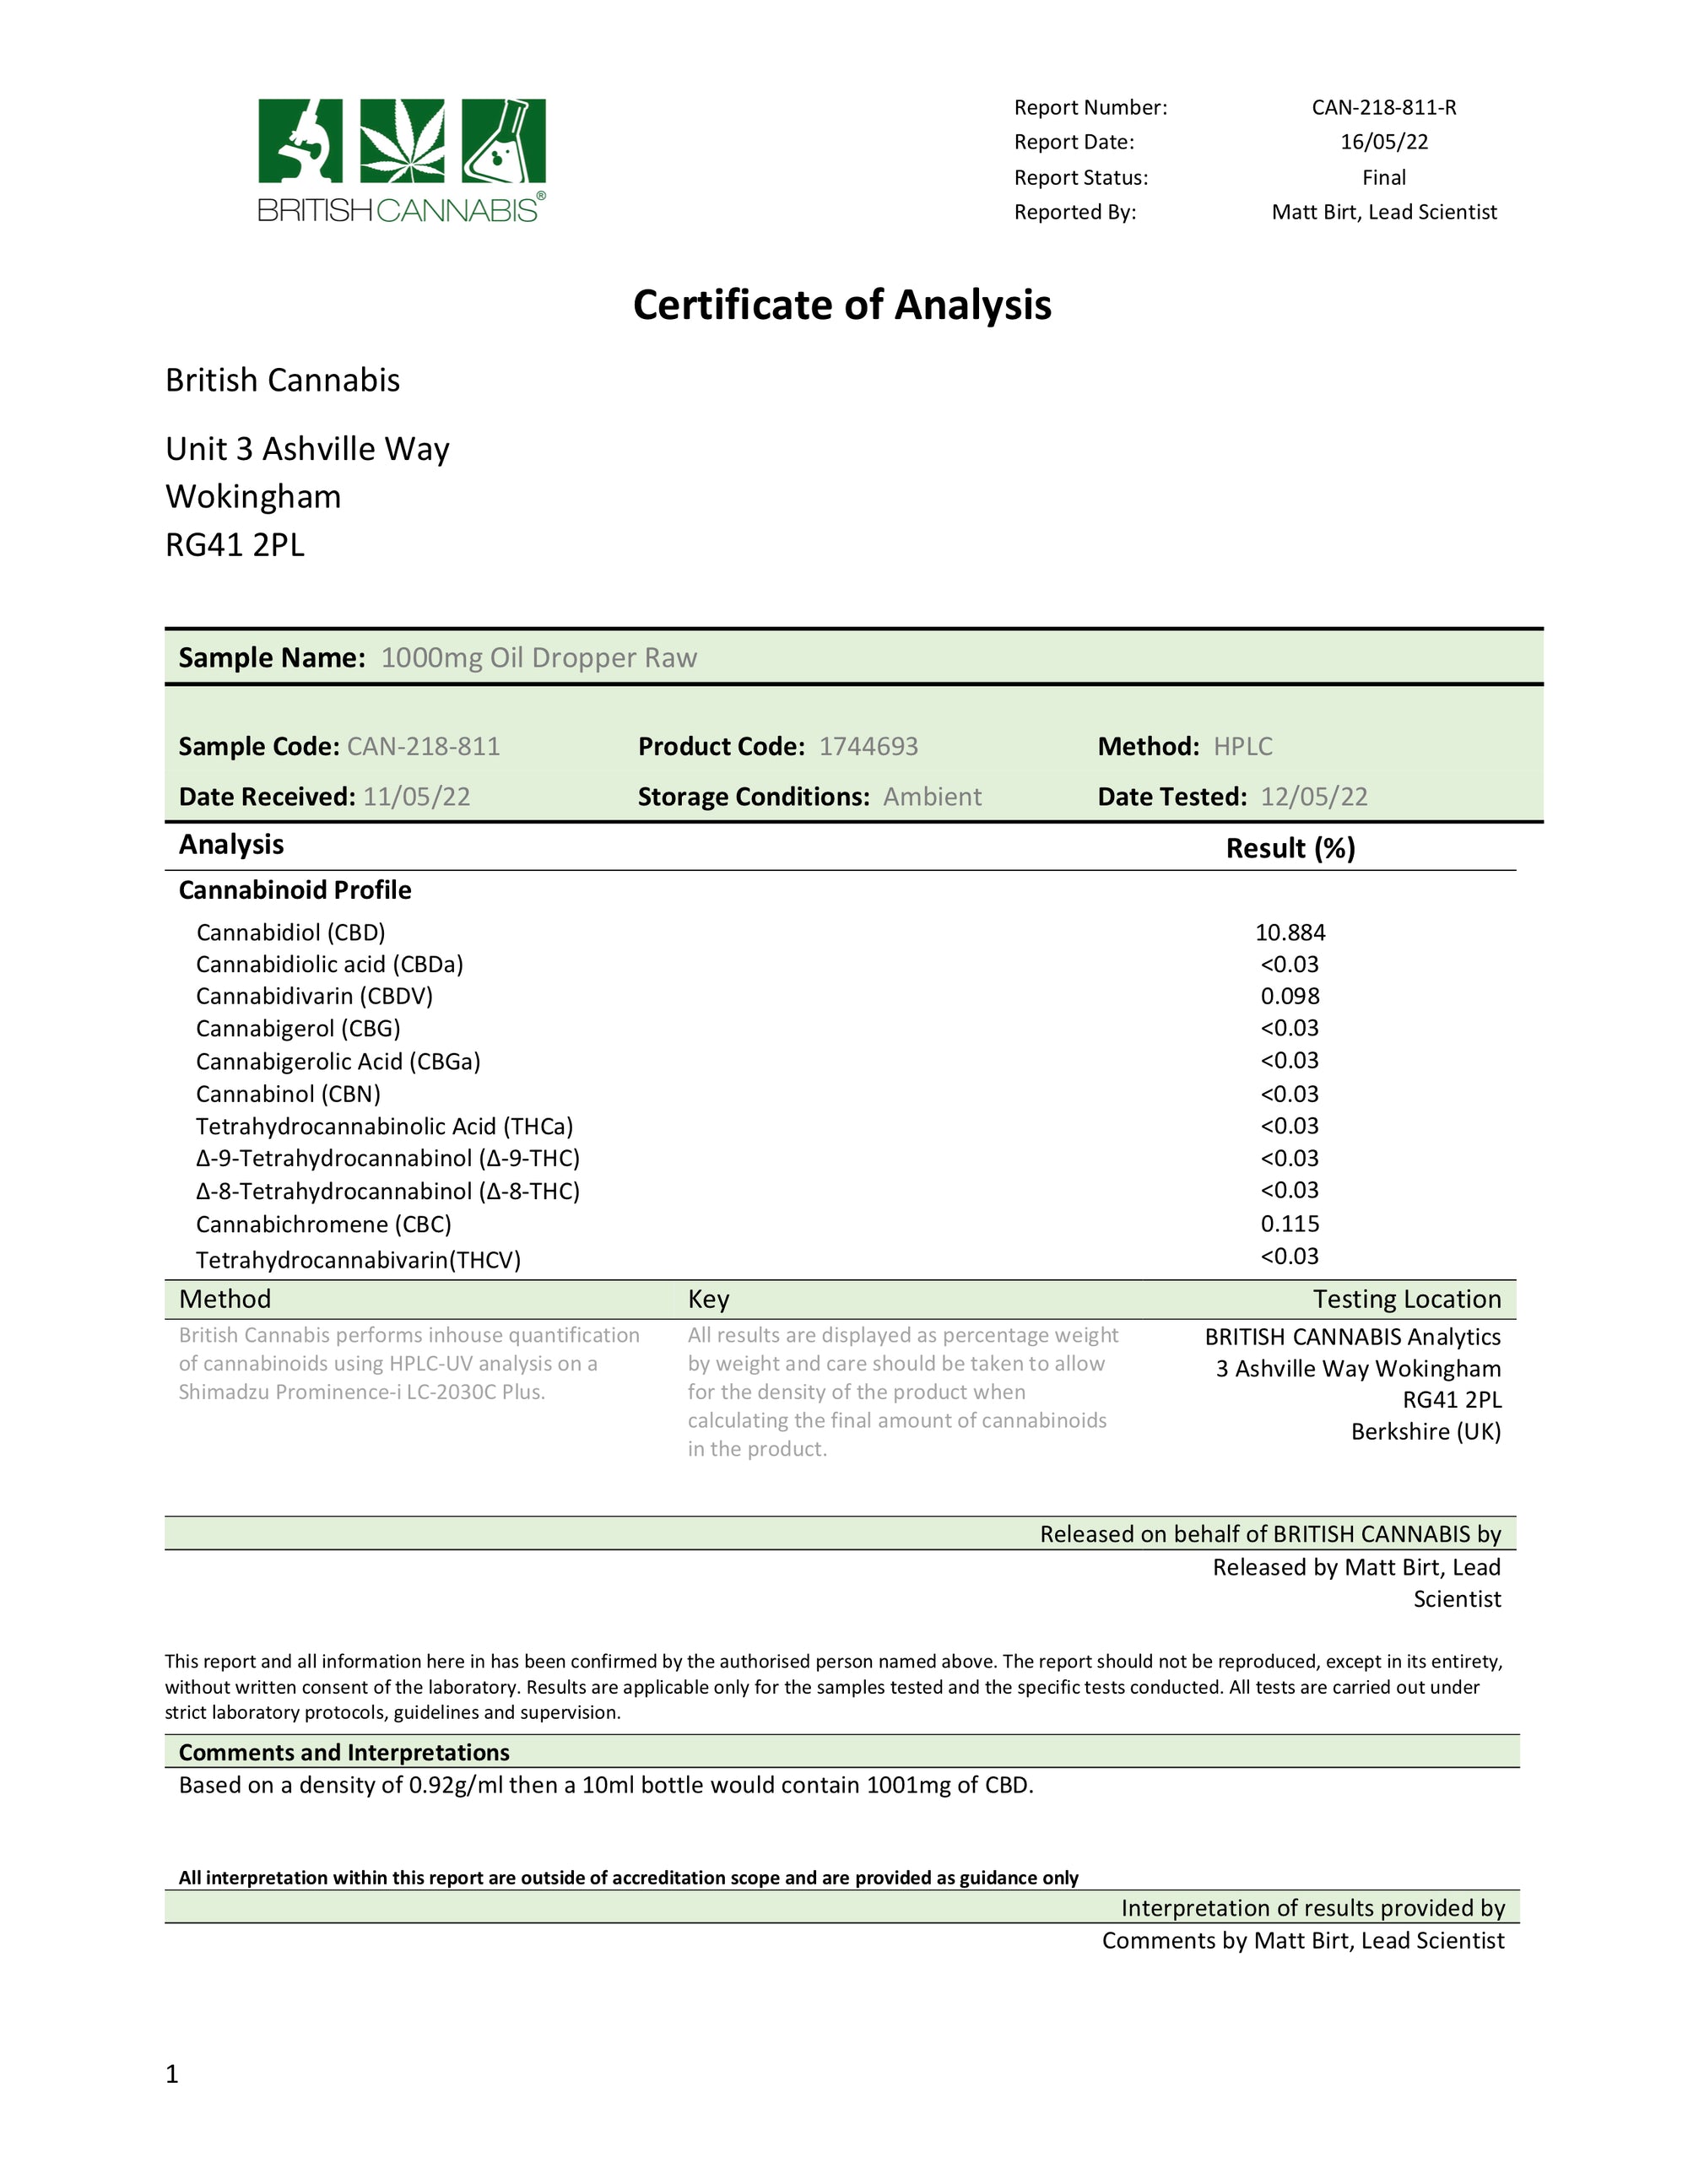 Pharmacy grade CBD oil certificte of analysis